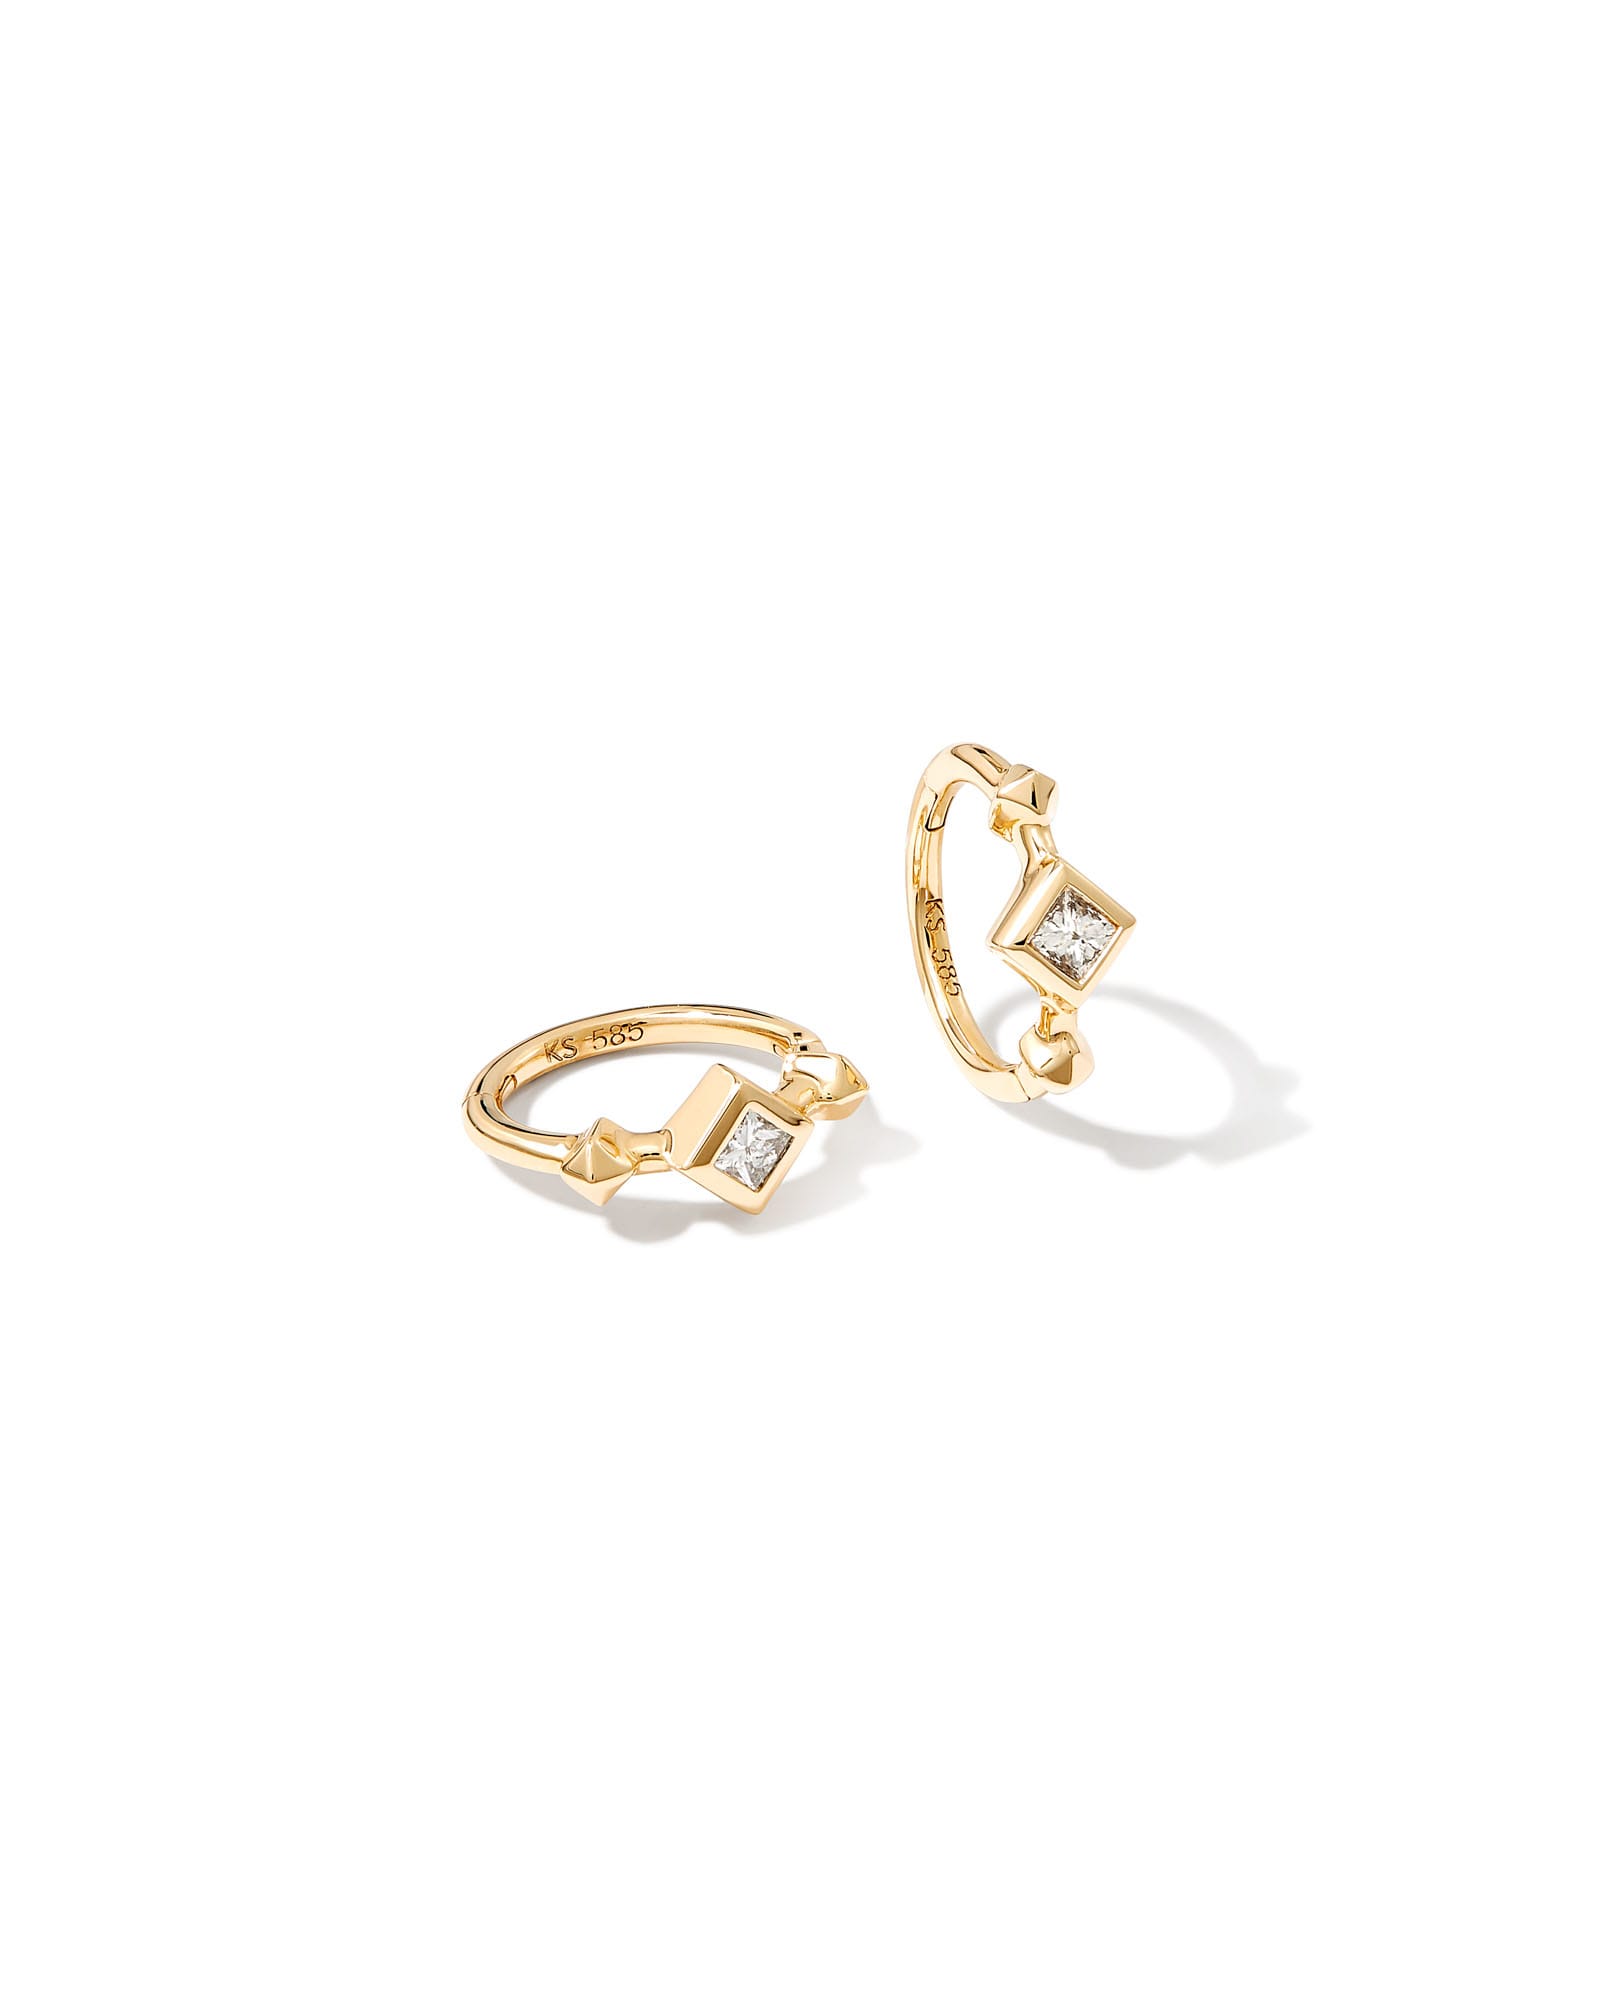 Michelle 14k Yellow Gold Huggie Earrings in White Diamond | Kendra Scott